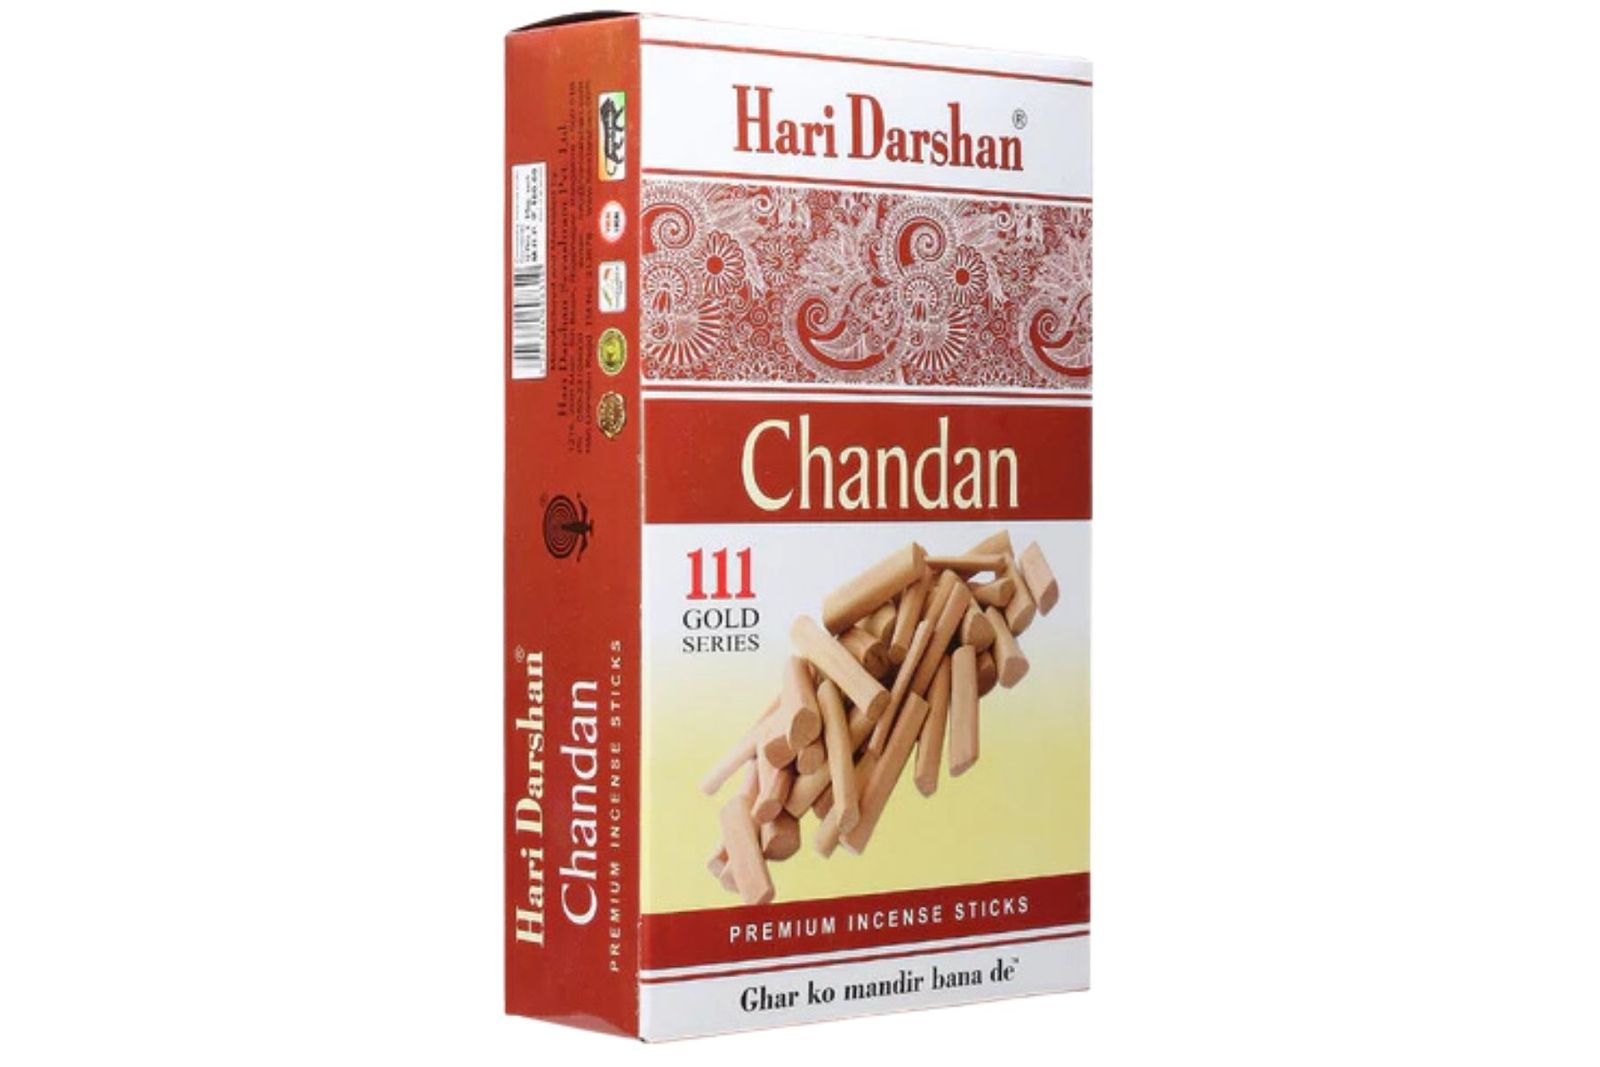 Hari Darshan Chandan  111 Gold Series